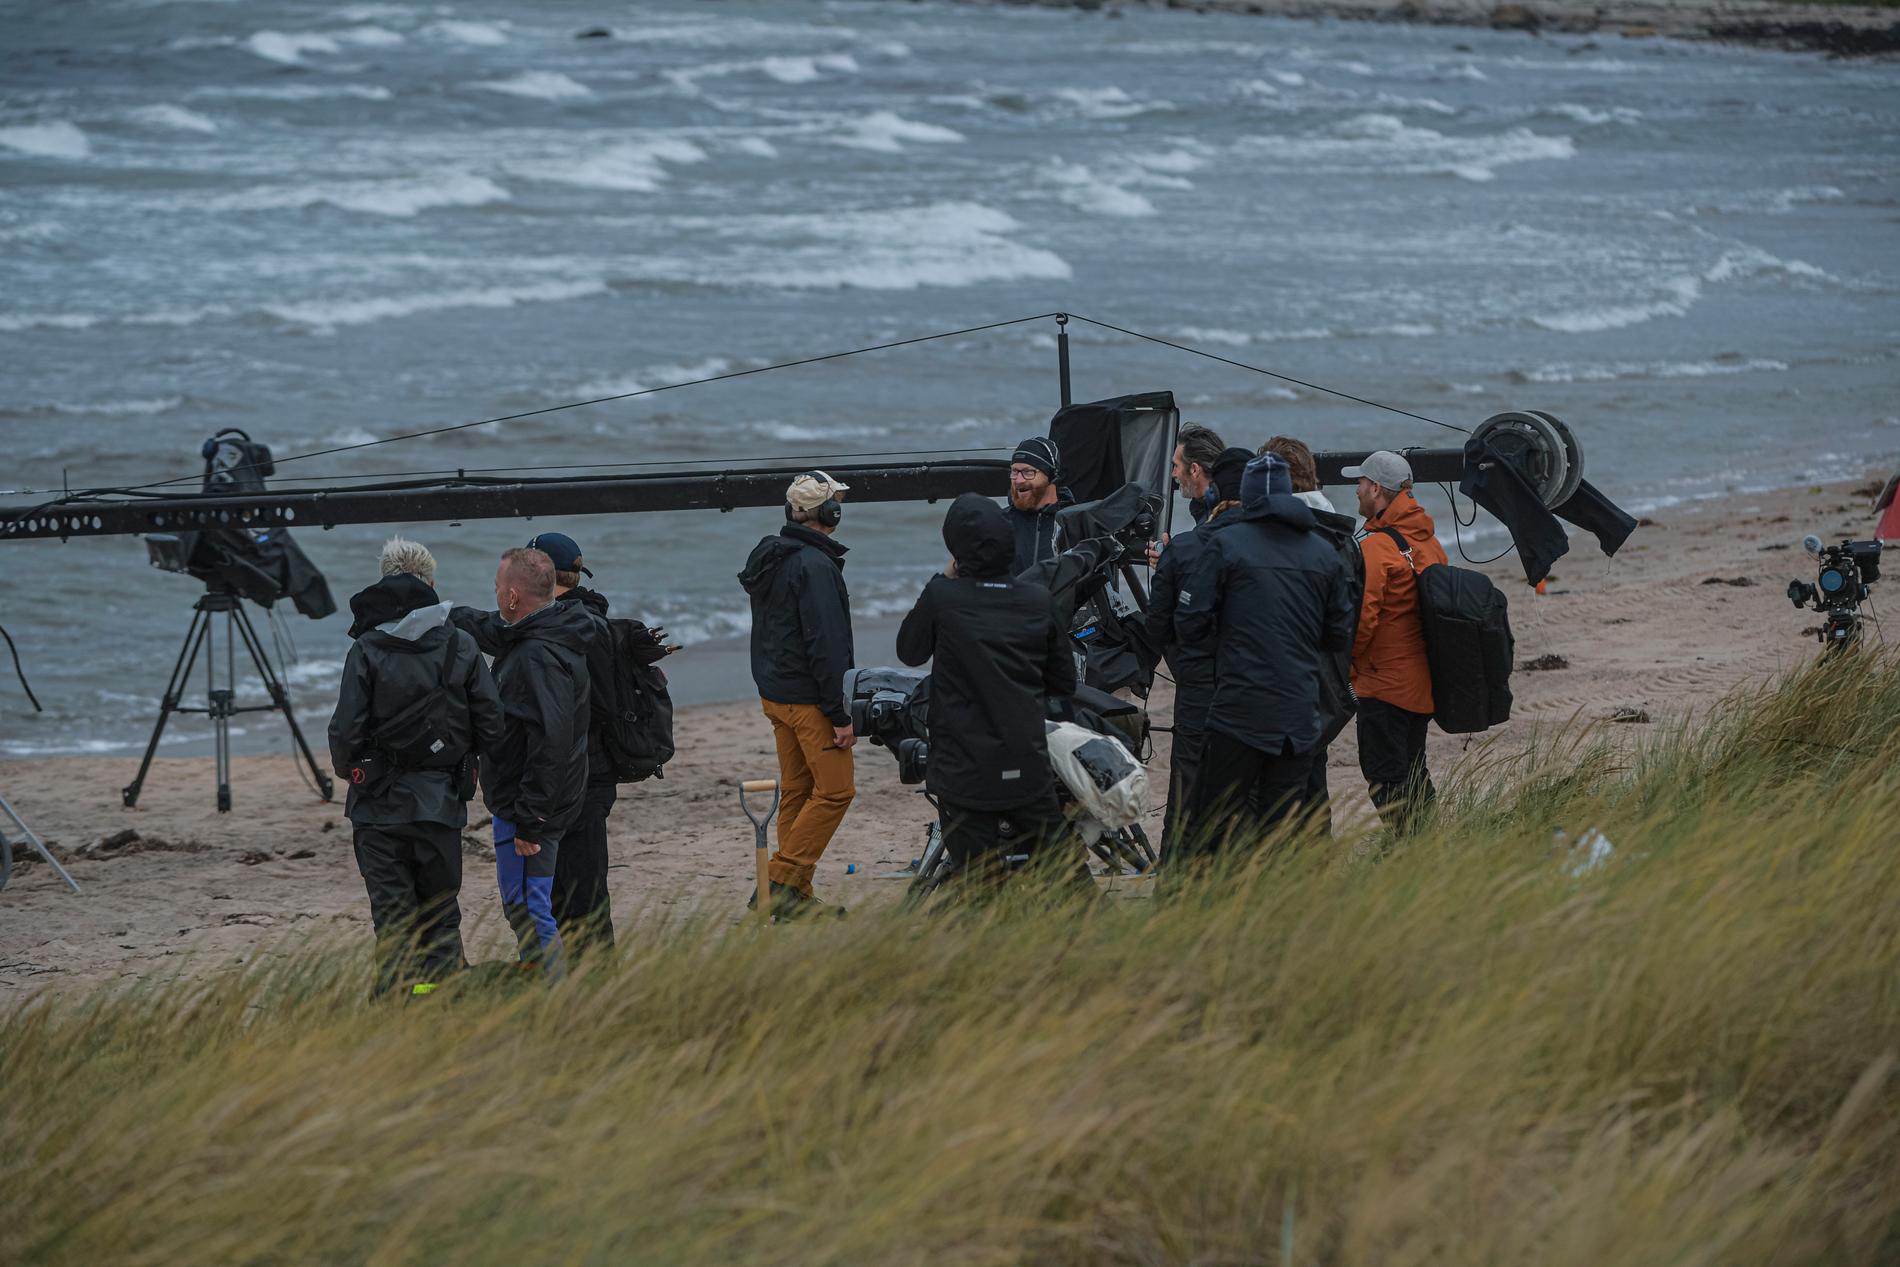 Kulingvarning i Kattegatt. Blåsten drog ner temperaturen ytterligare när ”Mästarnas mästare” spelade in på stranden på Bjärehalvön.